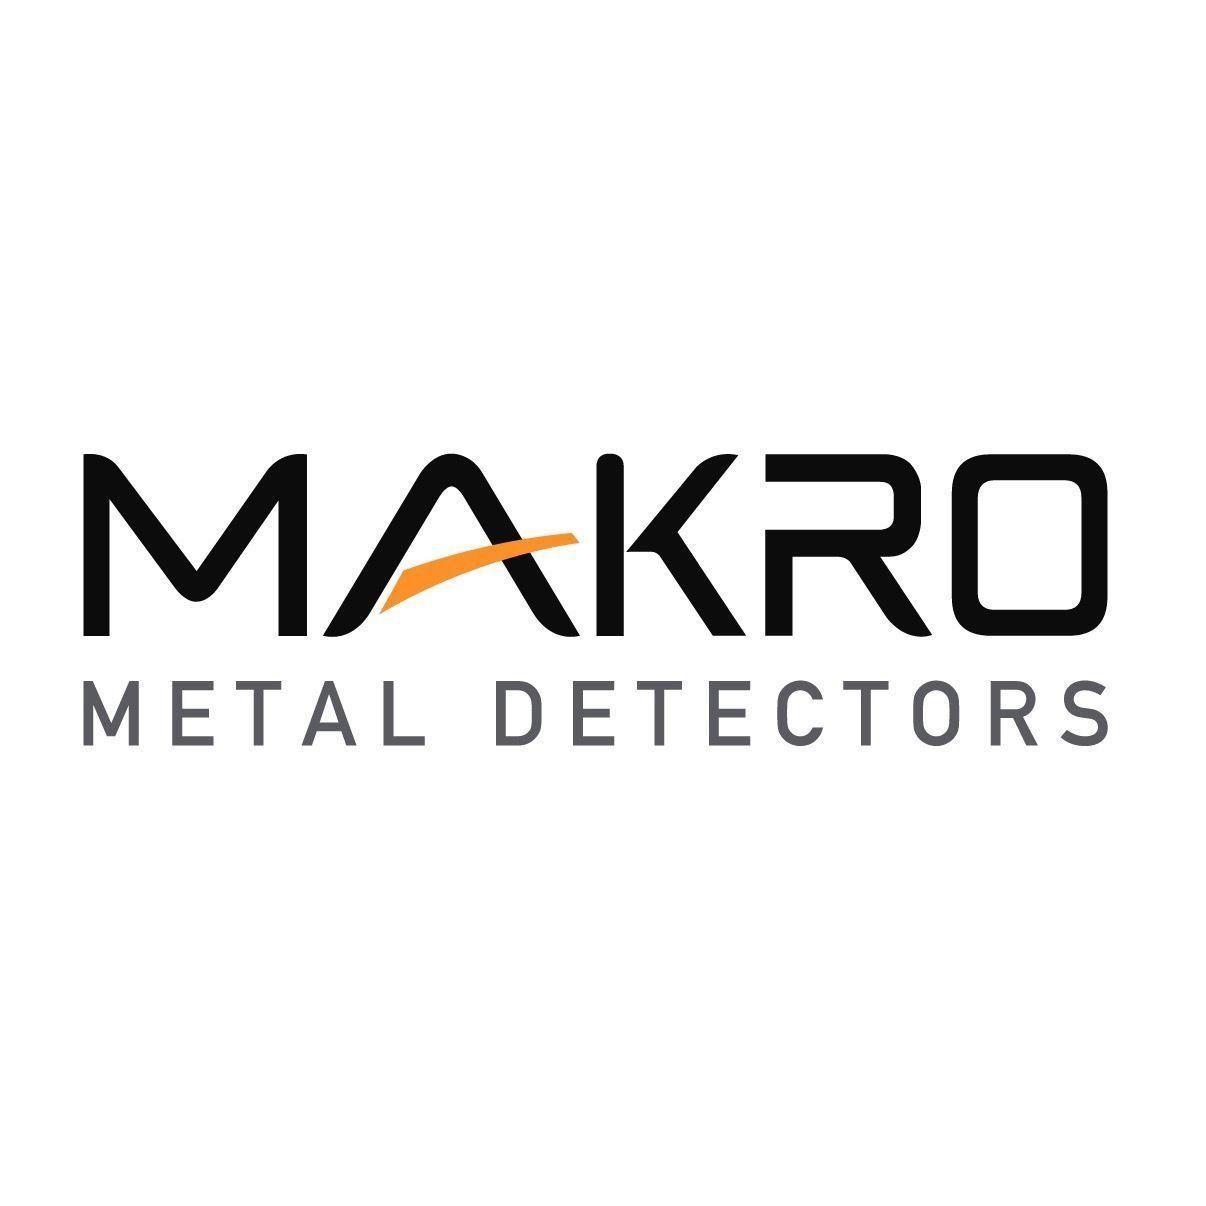 Makro Logo - Amazon.com : Makro Black Baseball Cap with Official Makro Logo